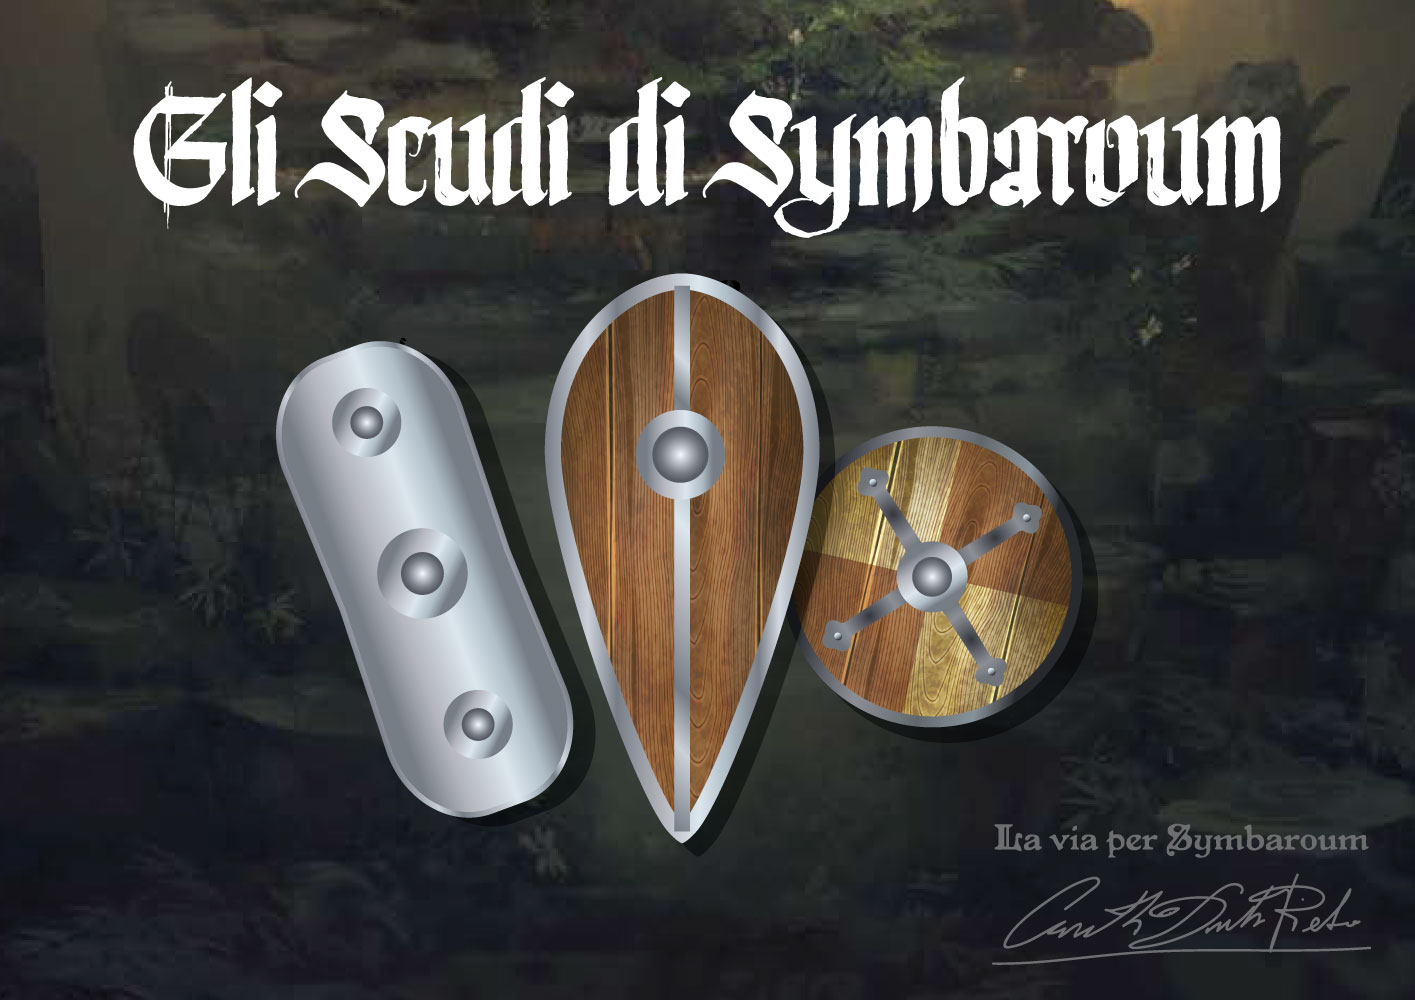 Immagini di scudi medievali del gioco di ruolo Symbaroum